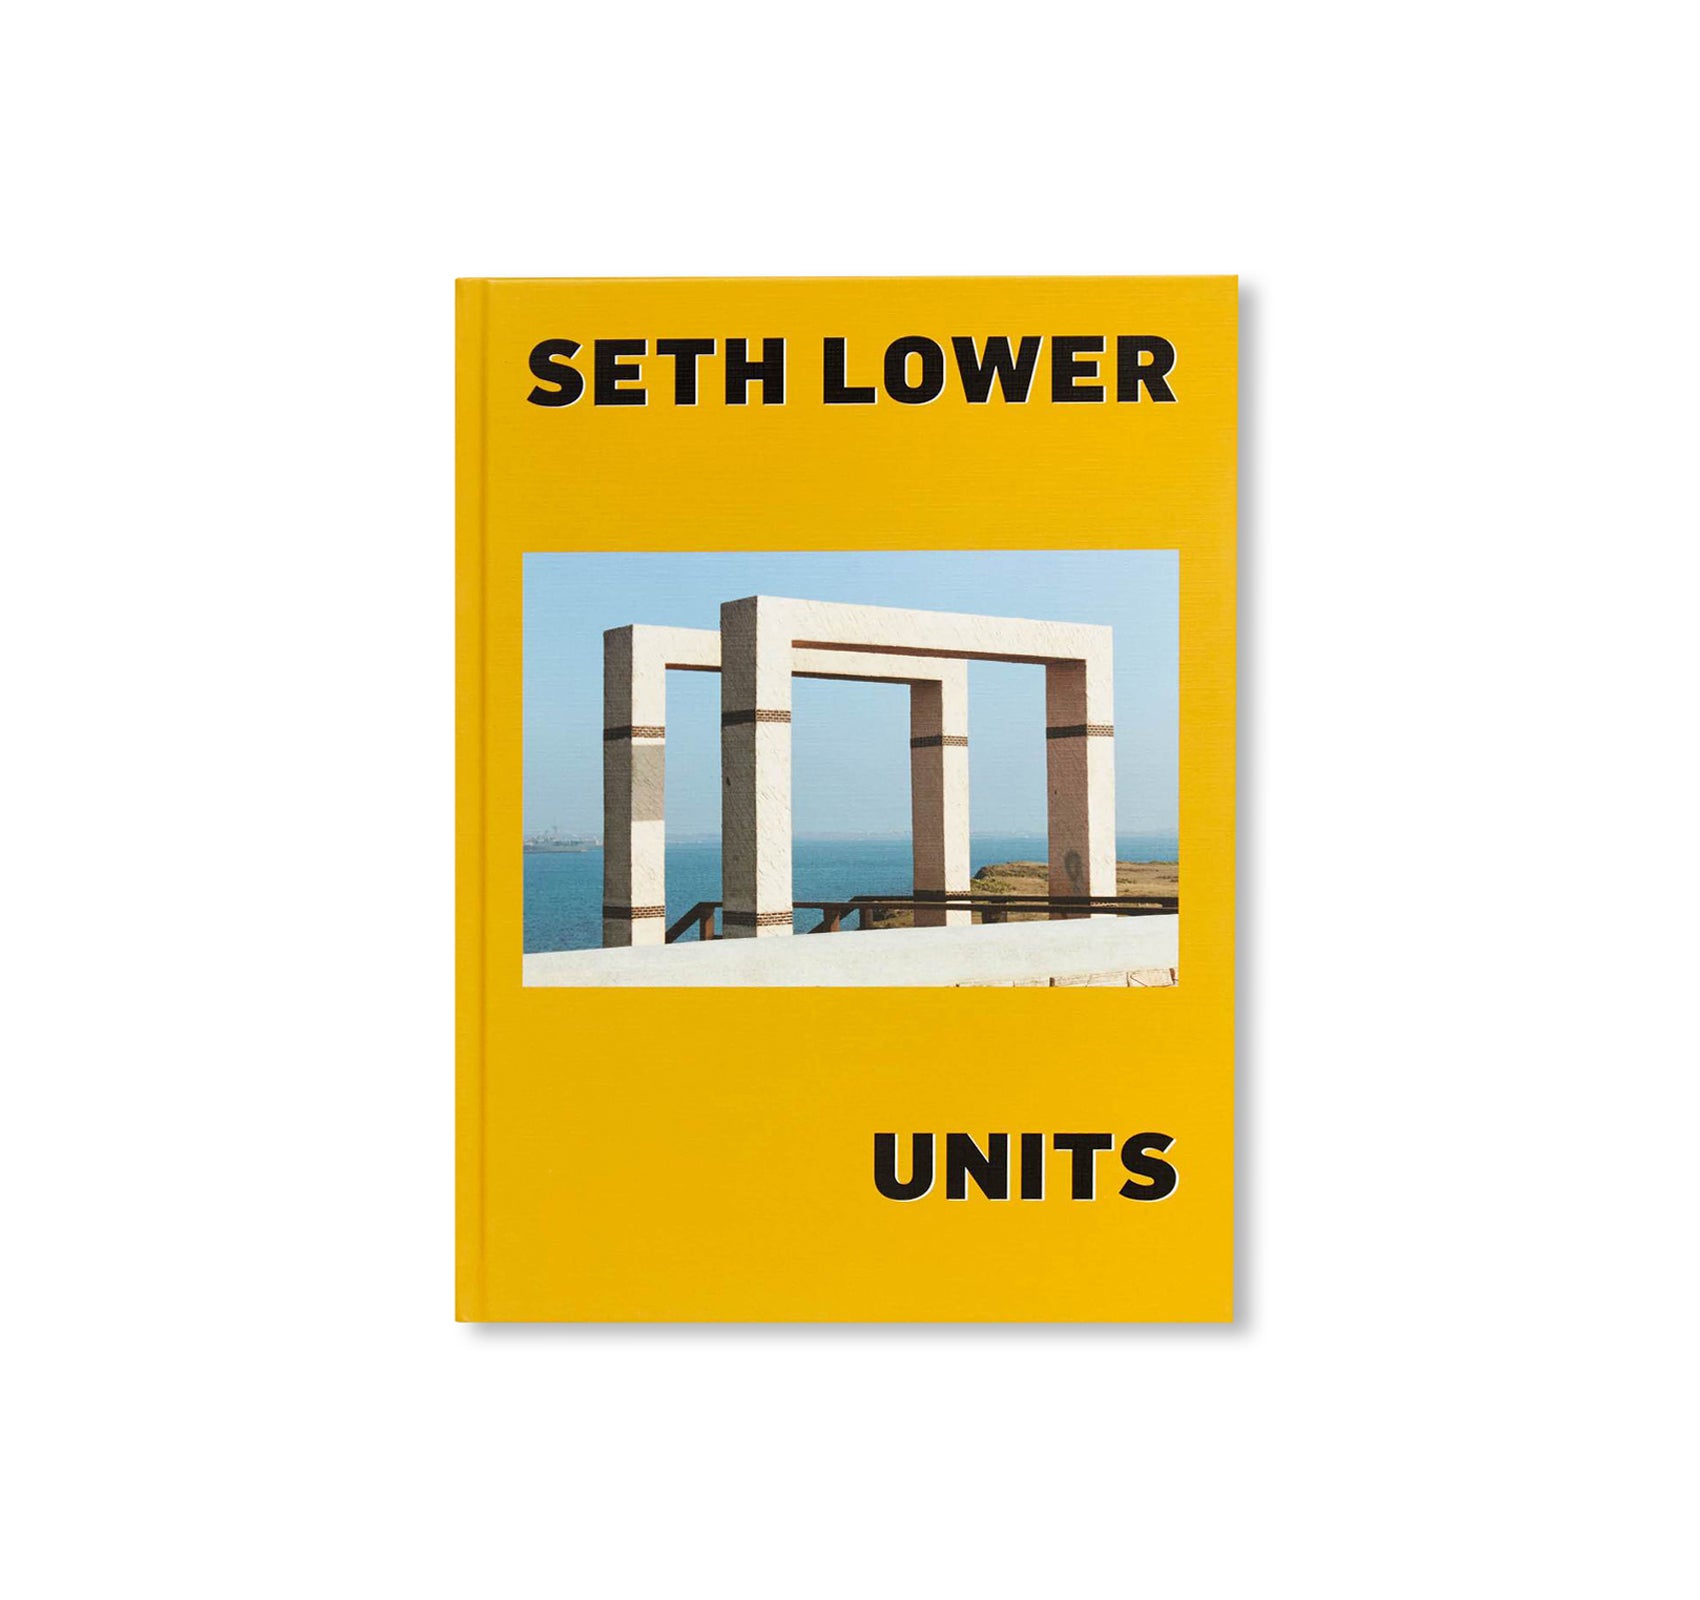 UNITS by Seth Lower